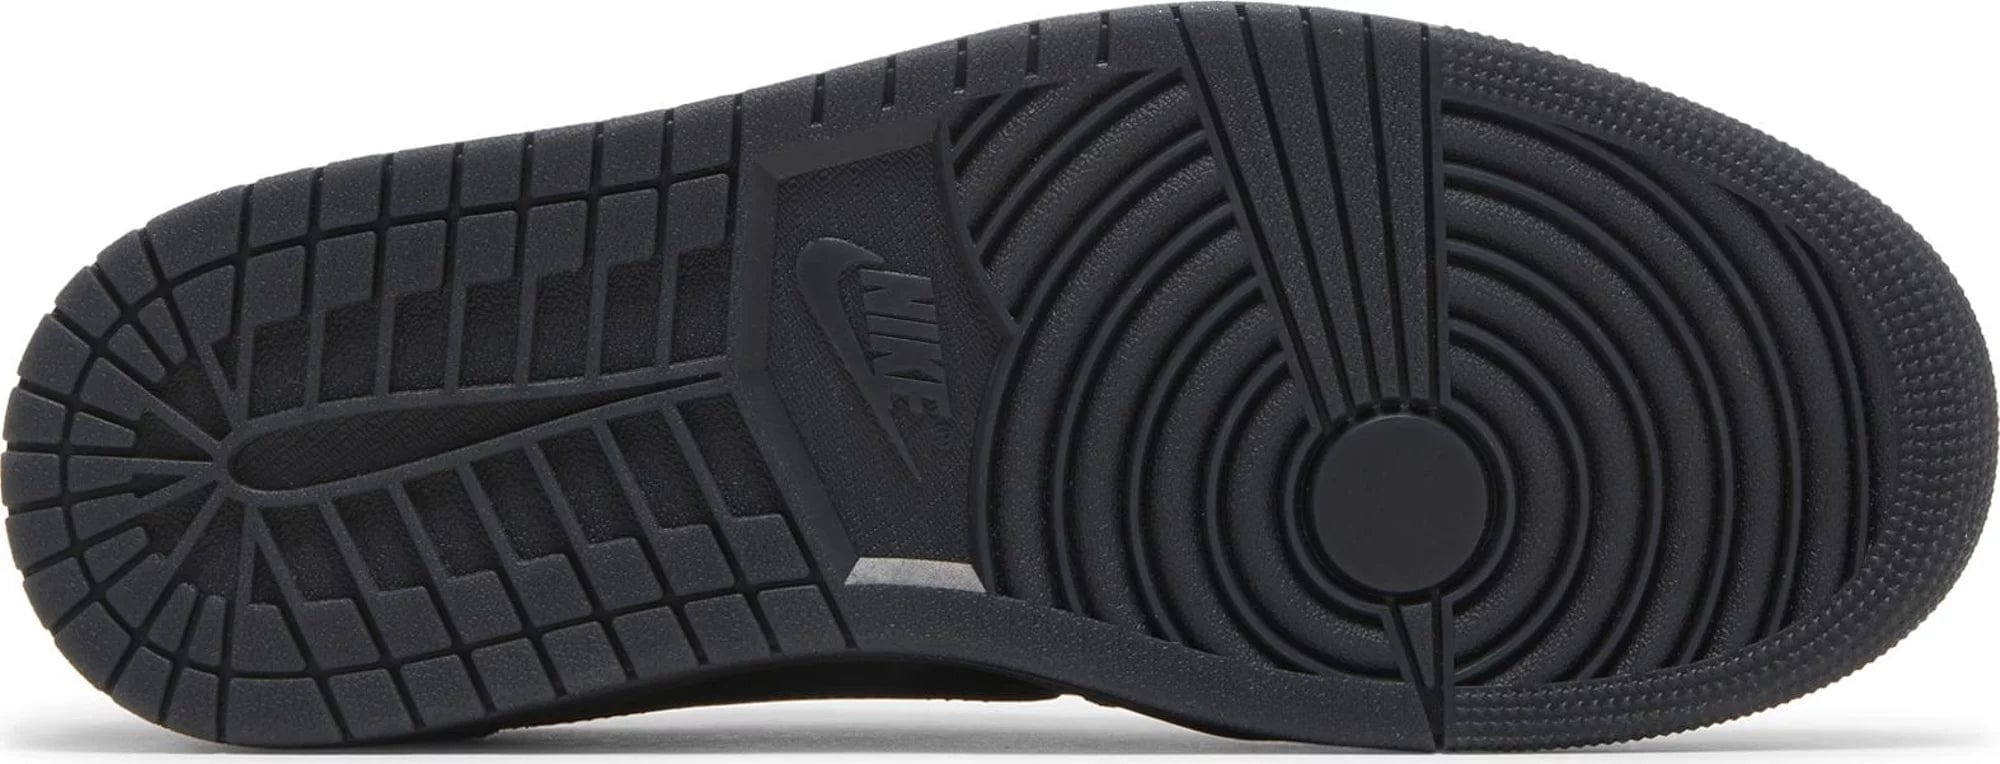 sneakers Nike Air Jordan 1 Retro Low OG SP Travis Scott Black Phantom Men's